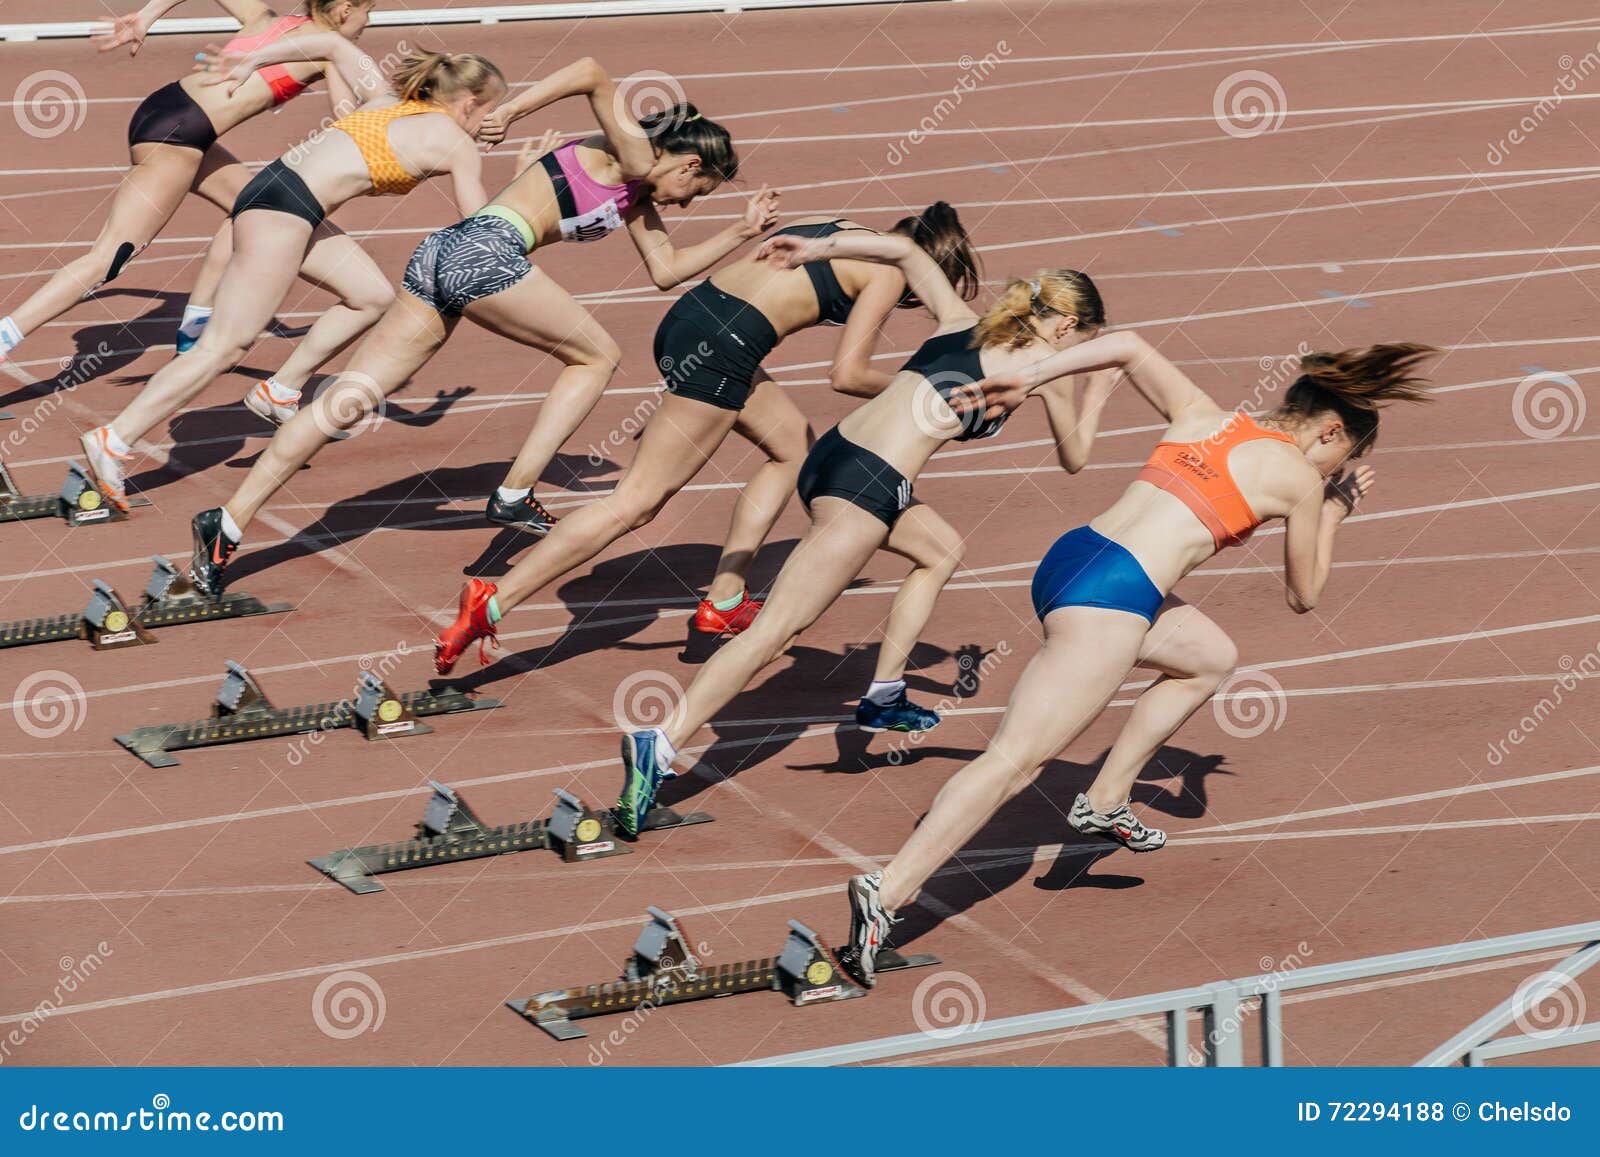 Фальстарт в забеге. Лёгкая атлетика спринт на 100 метров. Спринтерский бег 100 метров. Девушка на старте. Низкий старт в легкой атлетике.